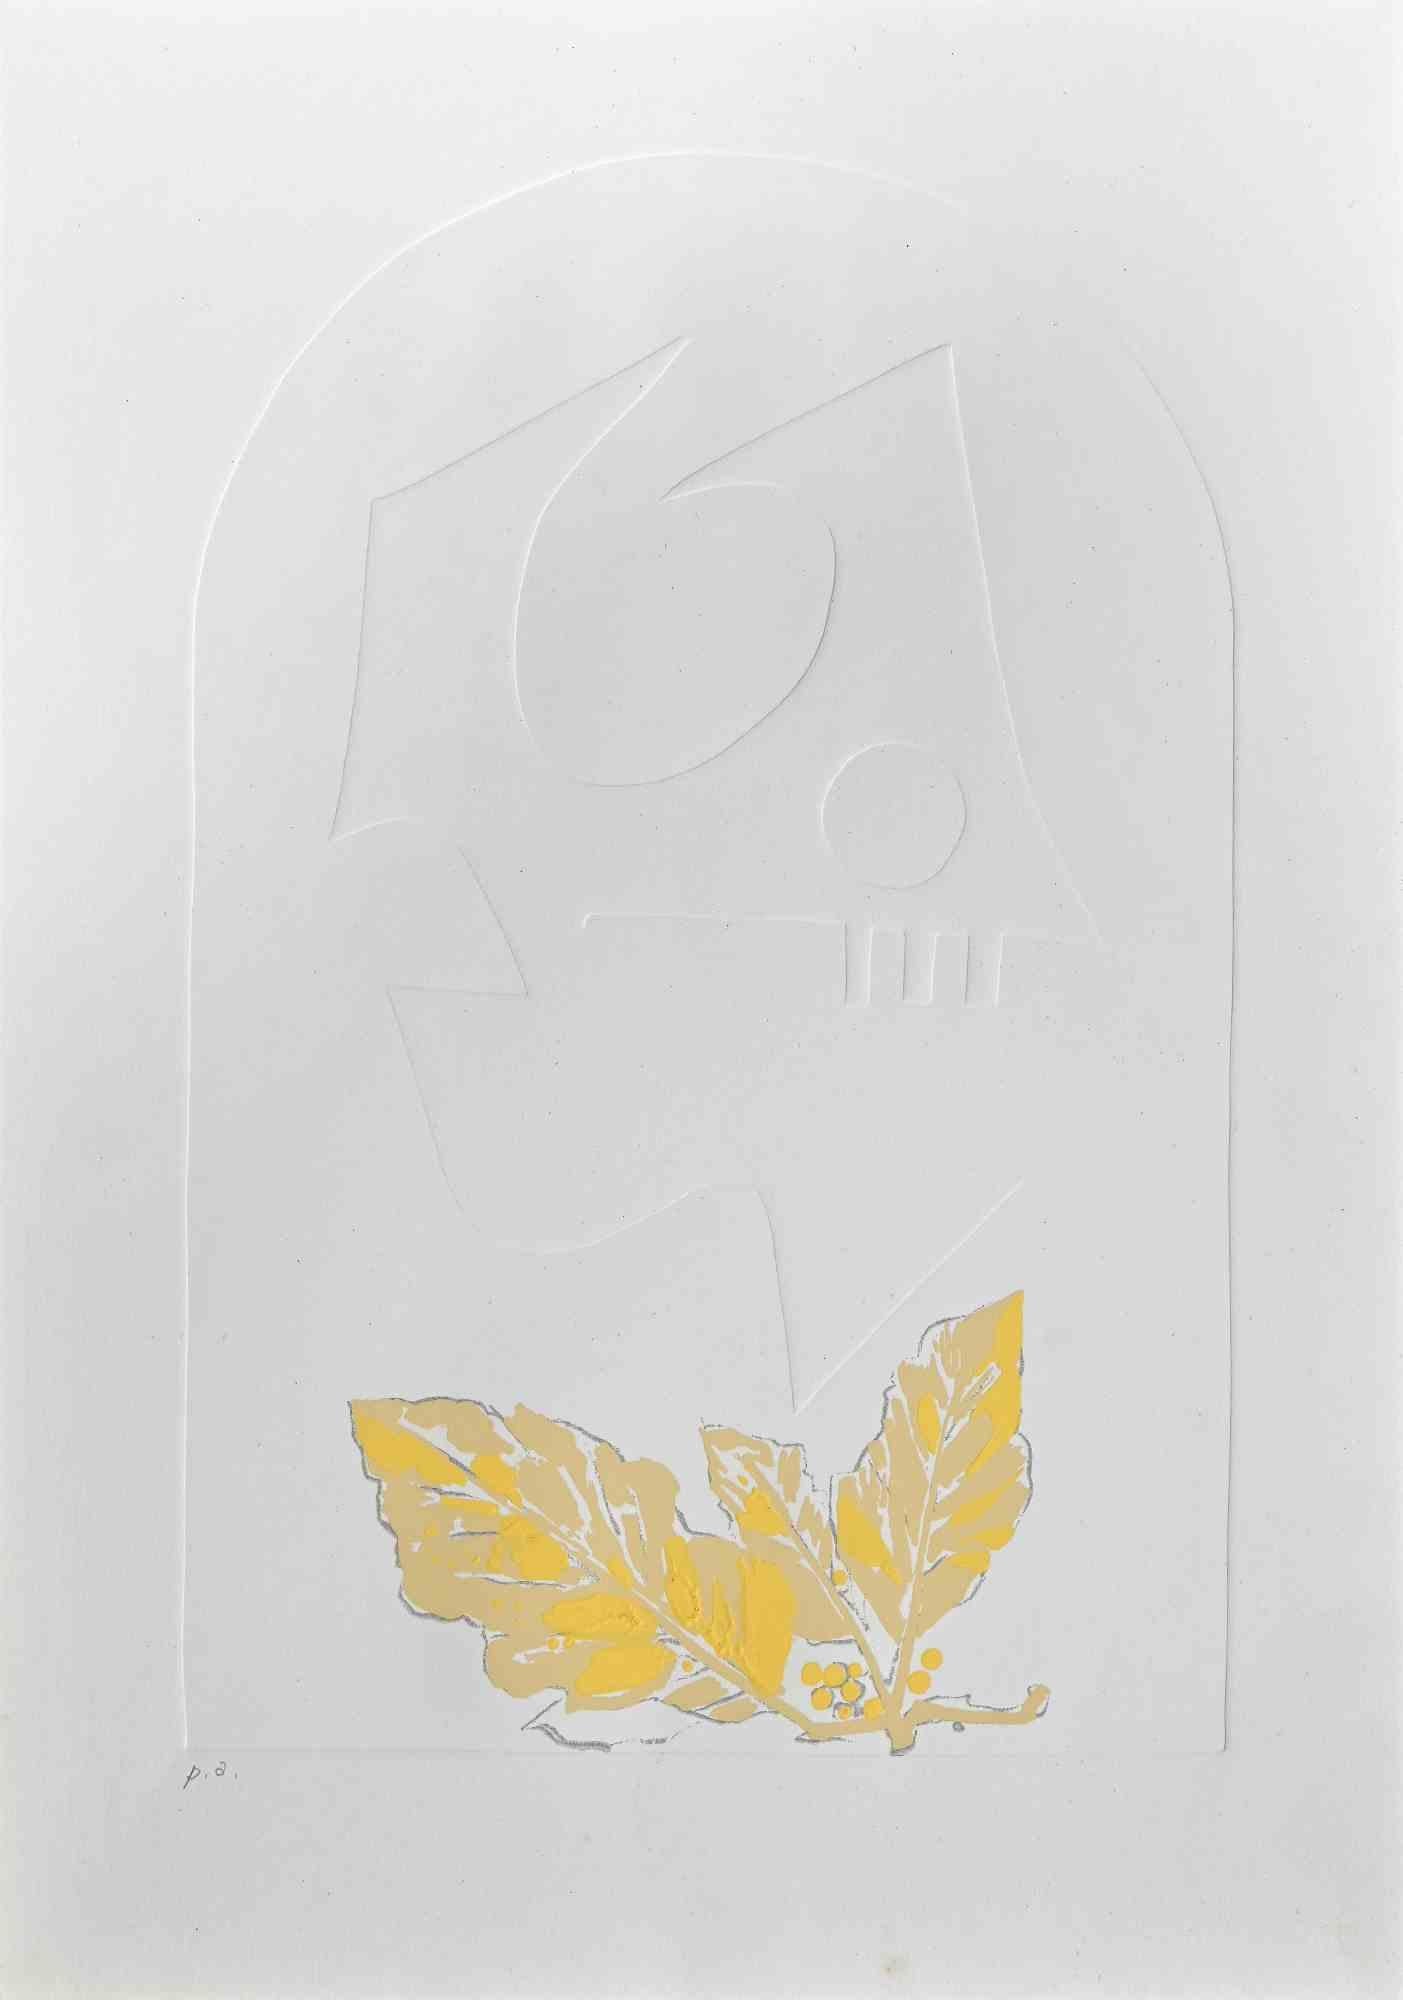 Yellow Leaves ist ein Siebdruck und eine Prägung von Leo Guida aus den 1971er Jahren.

Guter Zustand, proof artist.

Keine Unterschrift.

Als Künstler, der ein Gespür für aktuelle Themen, künstlerische Strömungen und historische Techniken hat,